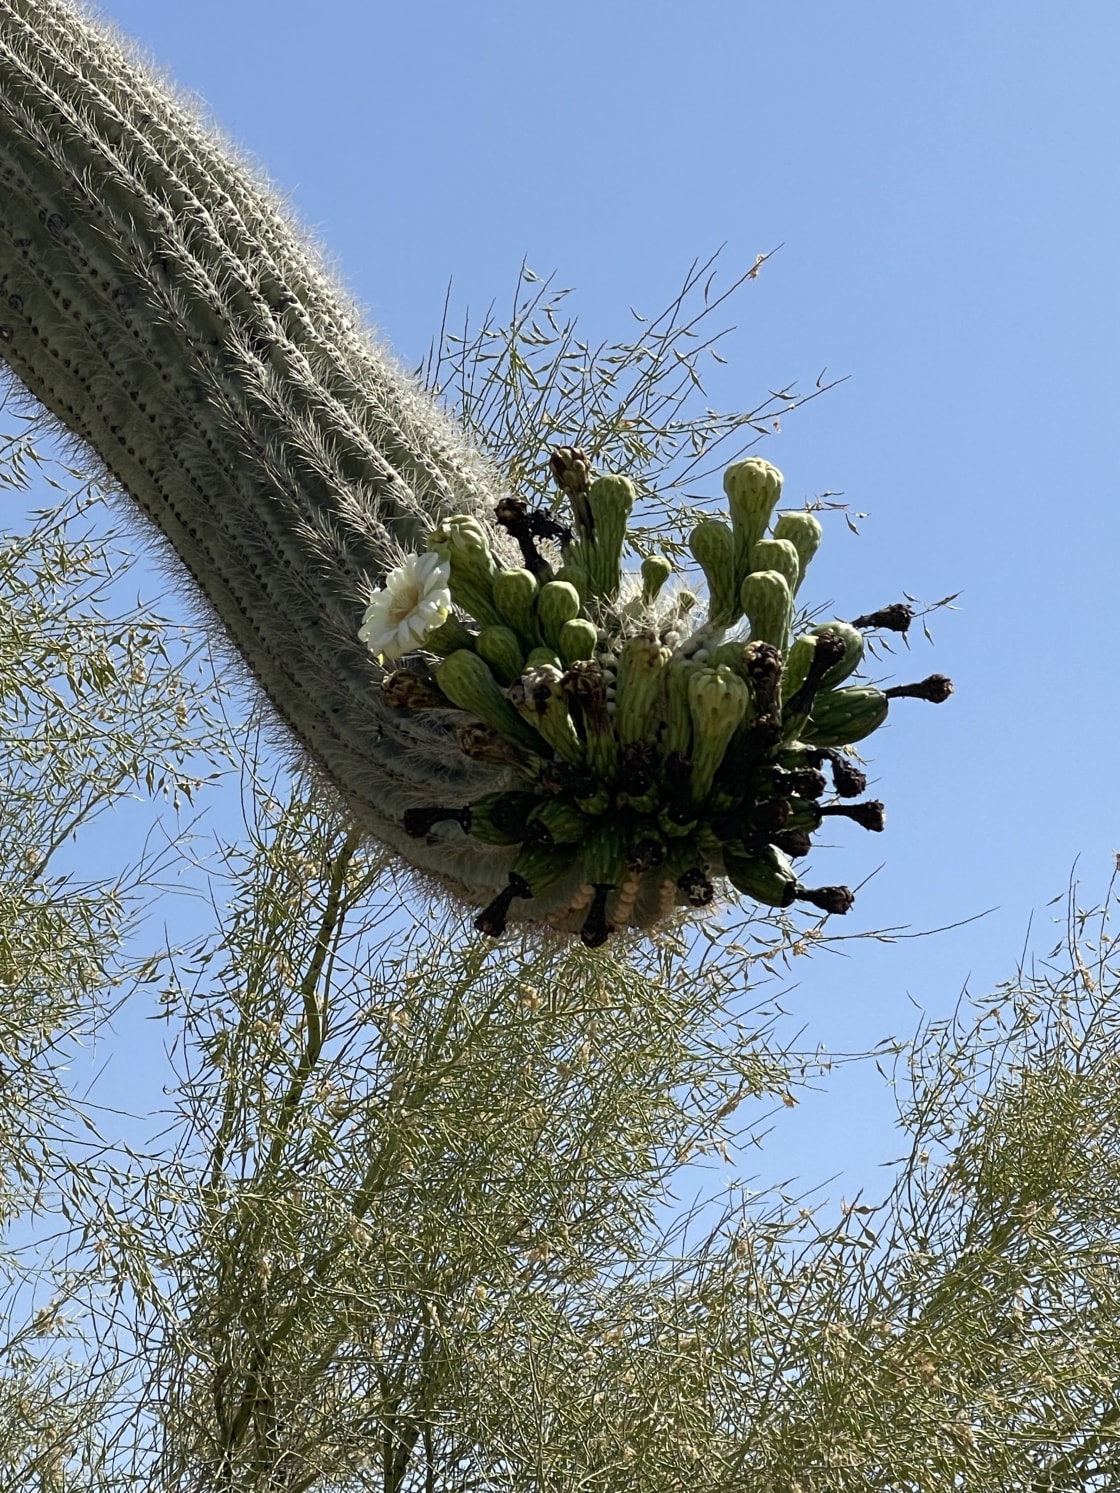 Saguaro Cactus Forrest